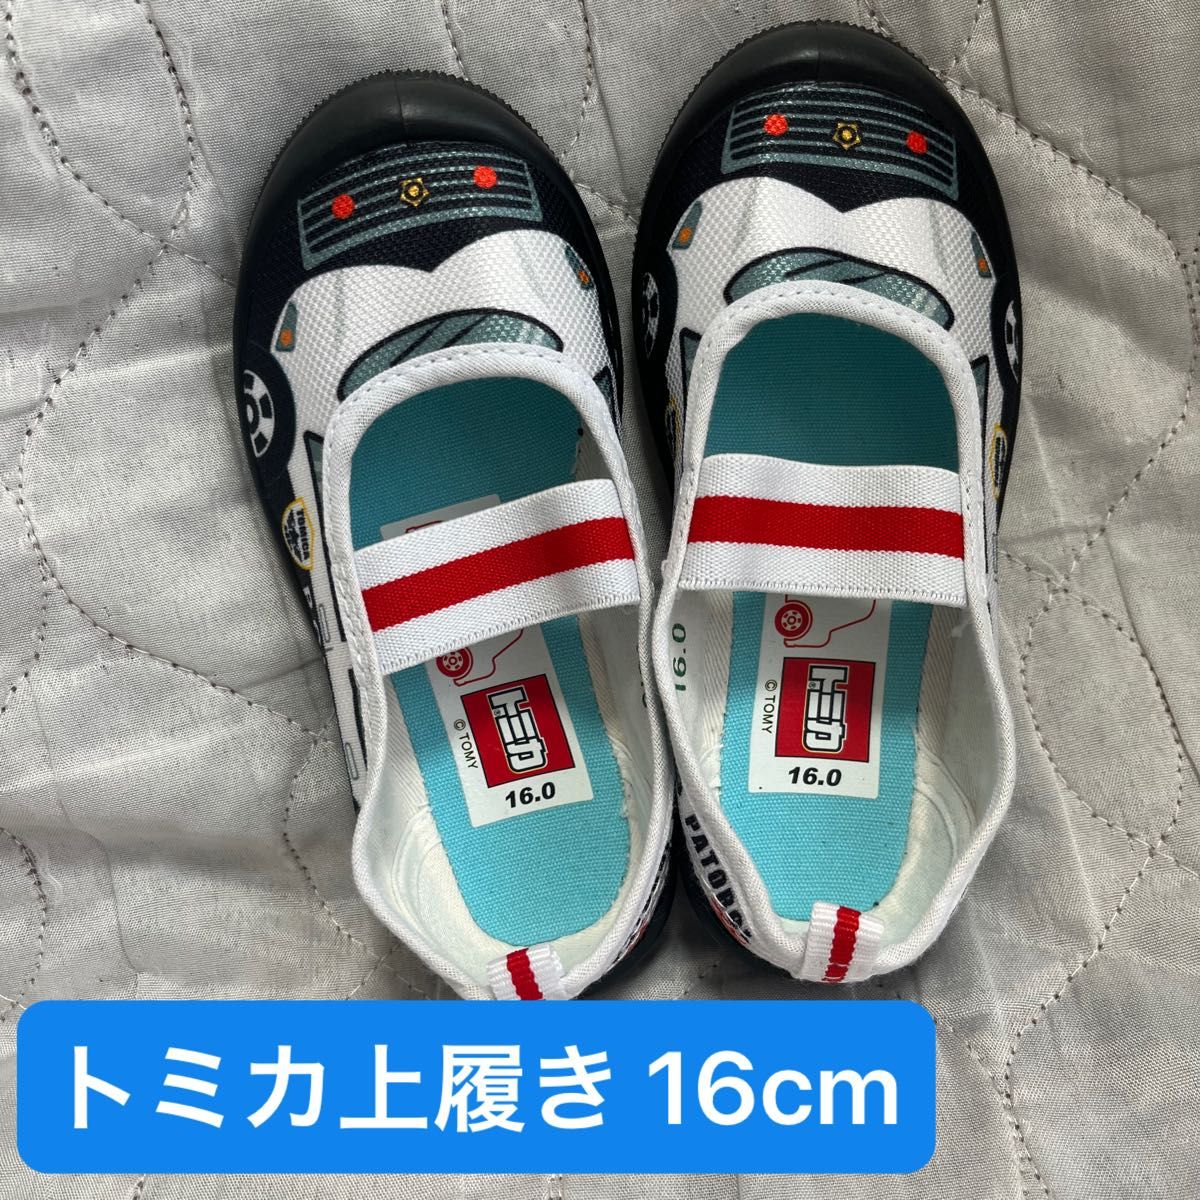 [トミカシリーズ]上履き 靴 TOMIKA トミカ タカラトミー パトカー パトロールカー 可愛い上履き 16cm